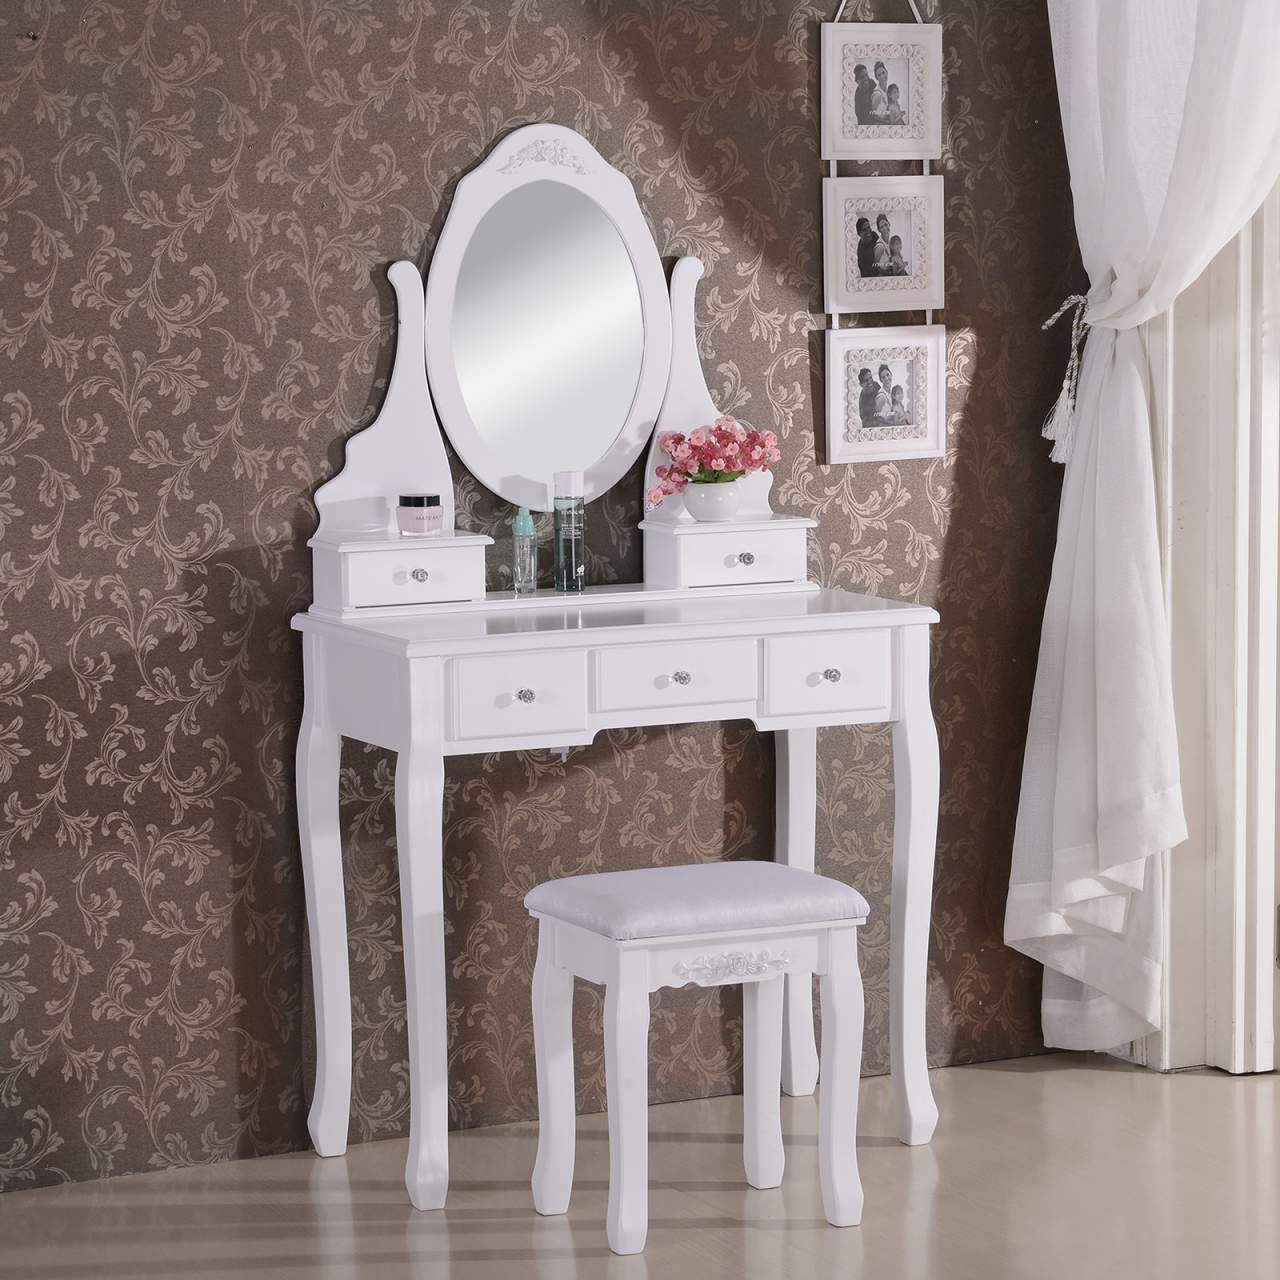 Farbe : SCHWARZ, größe : 24x18.5cm Zwei Größen verfügbar DQMSB Hochwertiger Tischspiegel Princess Spiegel Klappbarer tragbarer Spiegel Dressing Spiegel schwarz/weiß